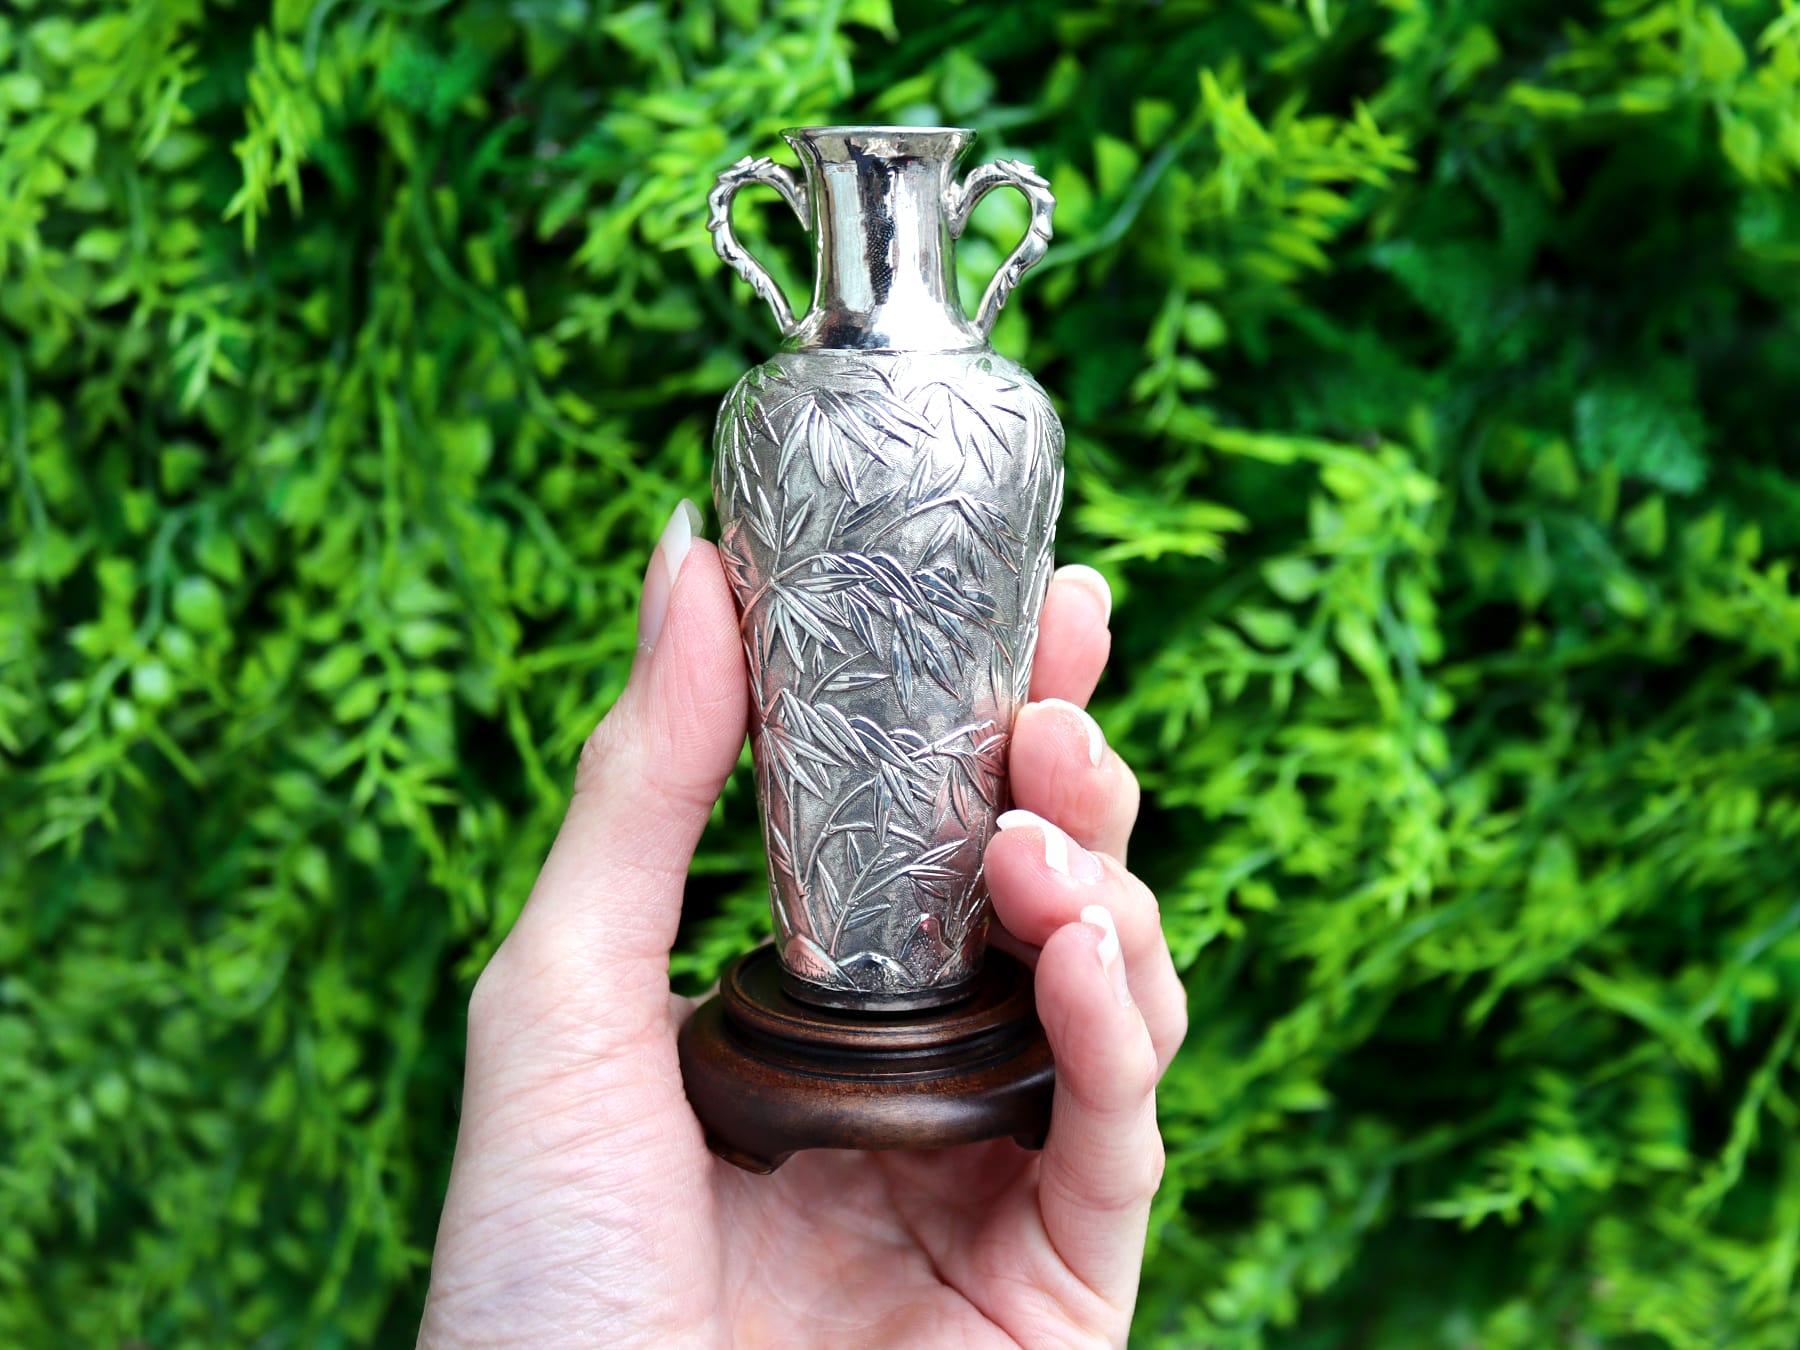 Ein außergewöhnliches, feines und beeindruckendes Paar antiker Vasen aus chinesischem Exportsilber und Kirschholz; eine Ergänzung zu unserer Sammlung von Ziersilberwaren

Diese beeindruckenden antiken chinesischen Export-Silbervasen haben eine